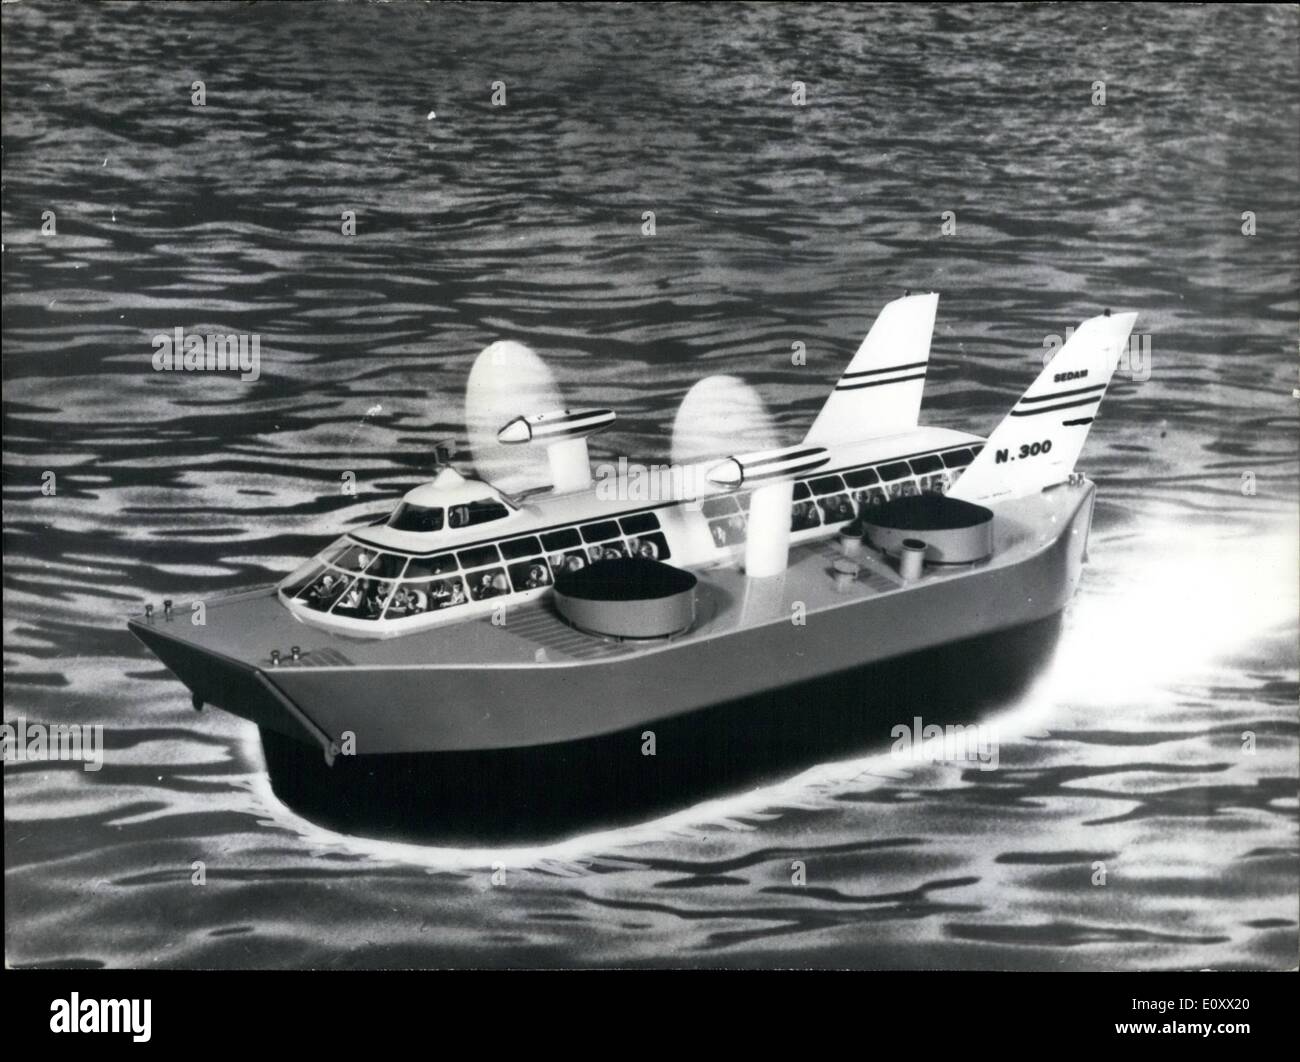 Il 12 Dic. 1967 - ''Navyplane'' ad essere messo in servizio sulla Riviera francese: il primo ''Navyplane'', una nuova versione di Hovercraft, sarà messo in servizio sulla Riviera Francese all'inizio della prossima estate. ''Navyplane'' trasportando 90 passeggeri ad una velocità di 100 Km. P.H. Sarà utilizzato sul Monte Carlo-Nice-Cannes- Saint Tropez linea. La foto mostra una rappresentazione artistica della nuova Hovercraft, ''Navyplane' Foto Stock